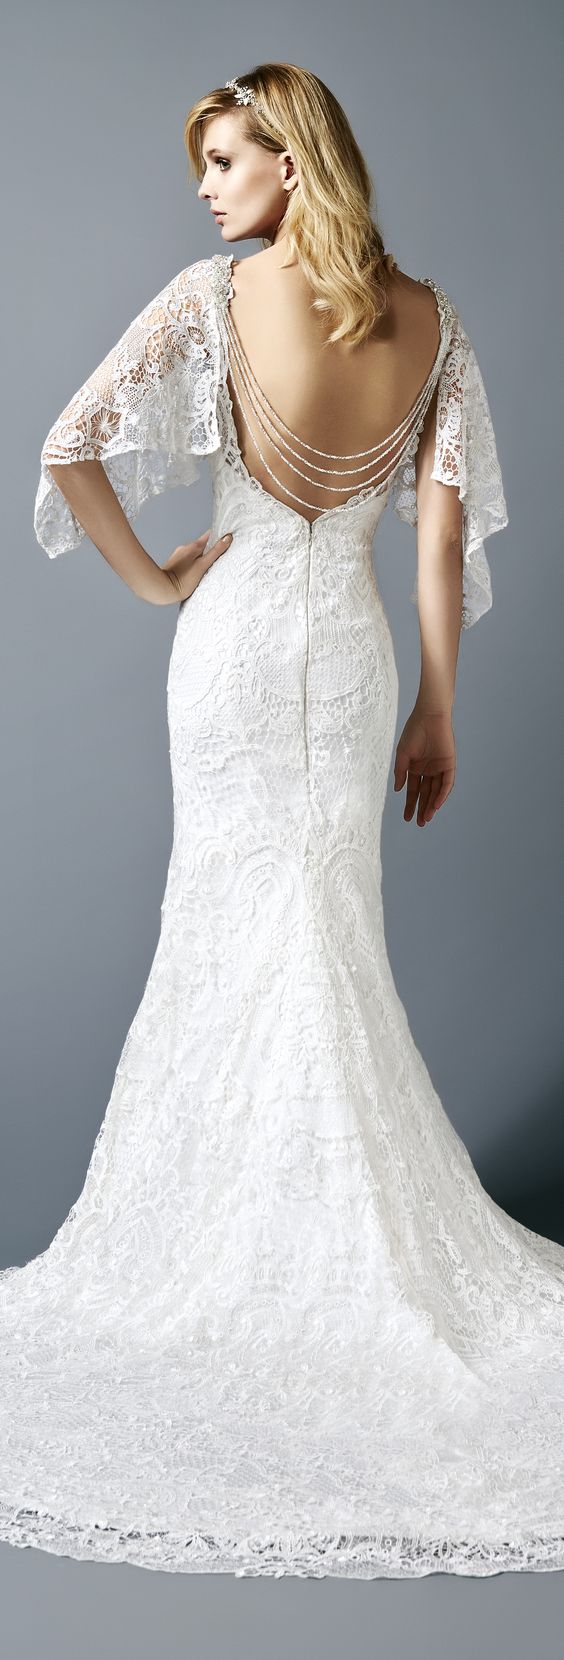 Val Stefani ASHTON STYLE D8115 flutter sleeves open back wedding dress